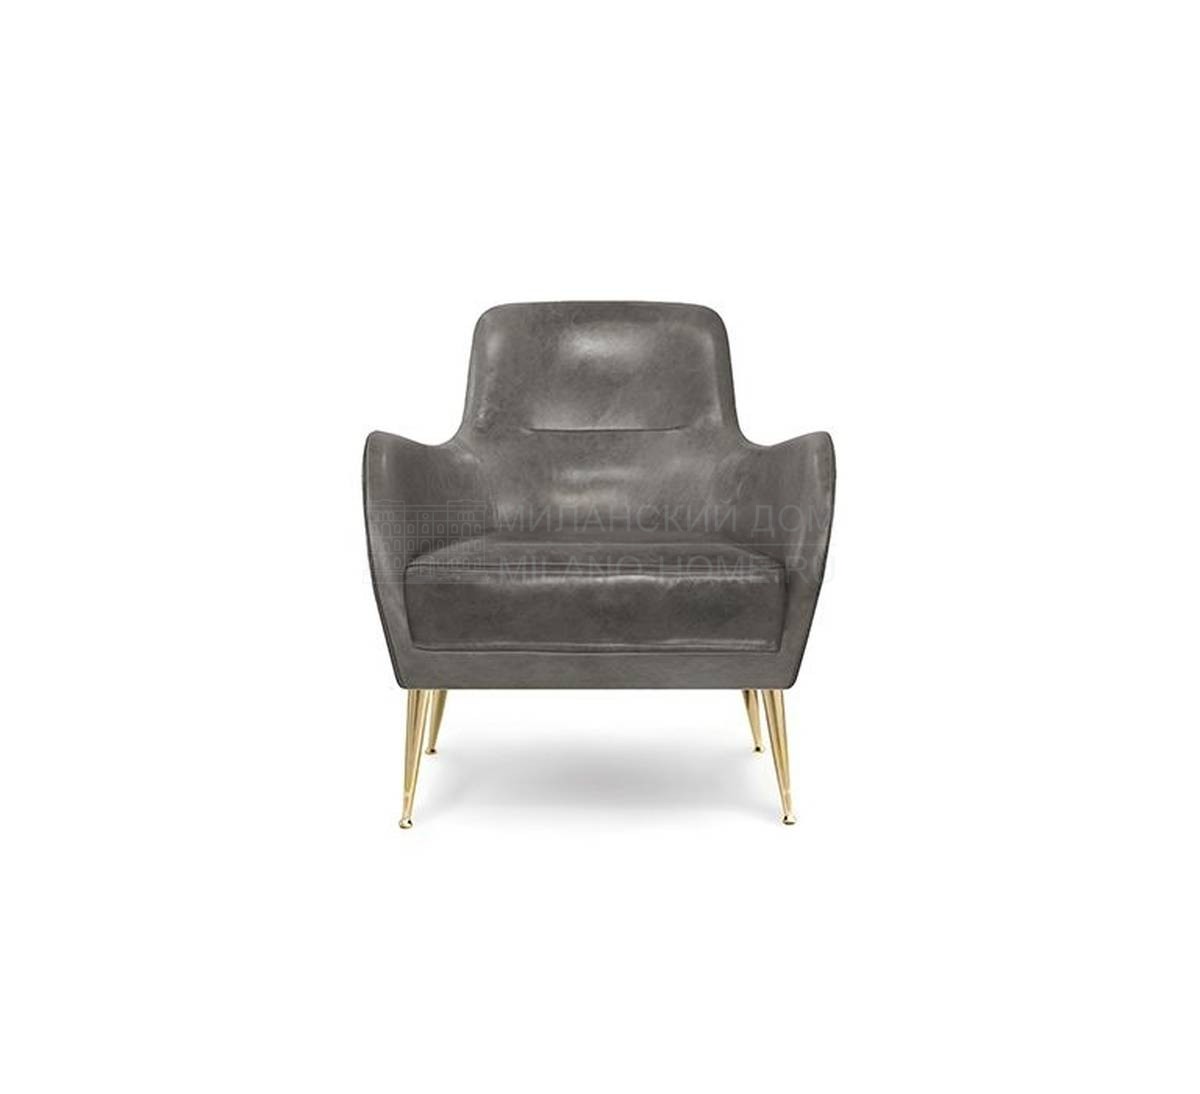 Кресло Dandridge/armchair из Португалии фабрики DELIGHTFULL